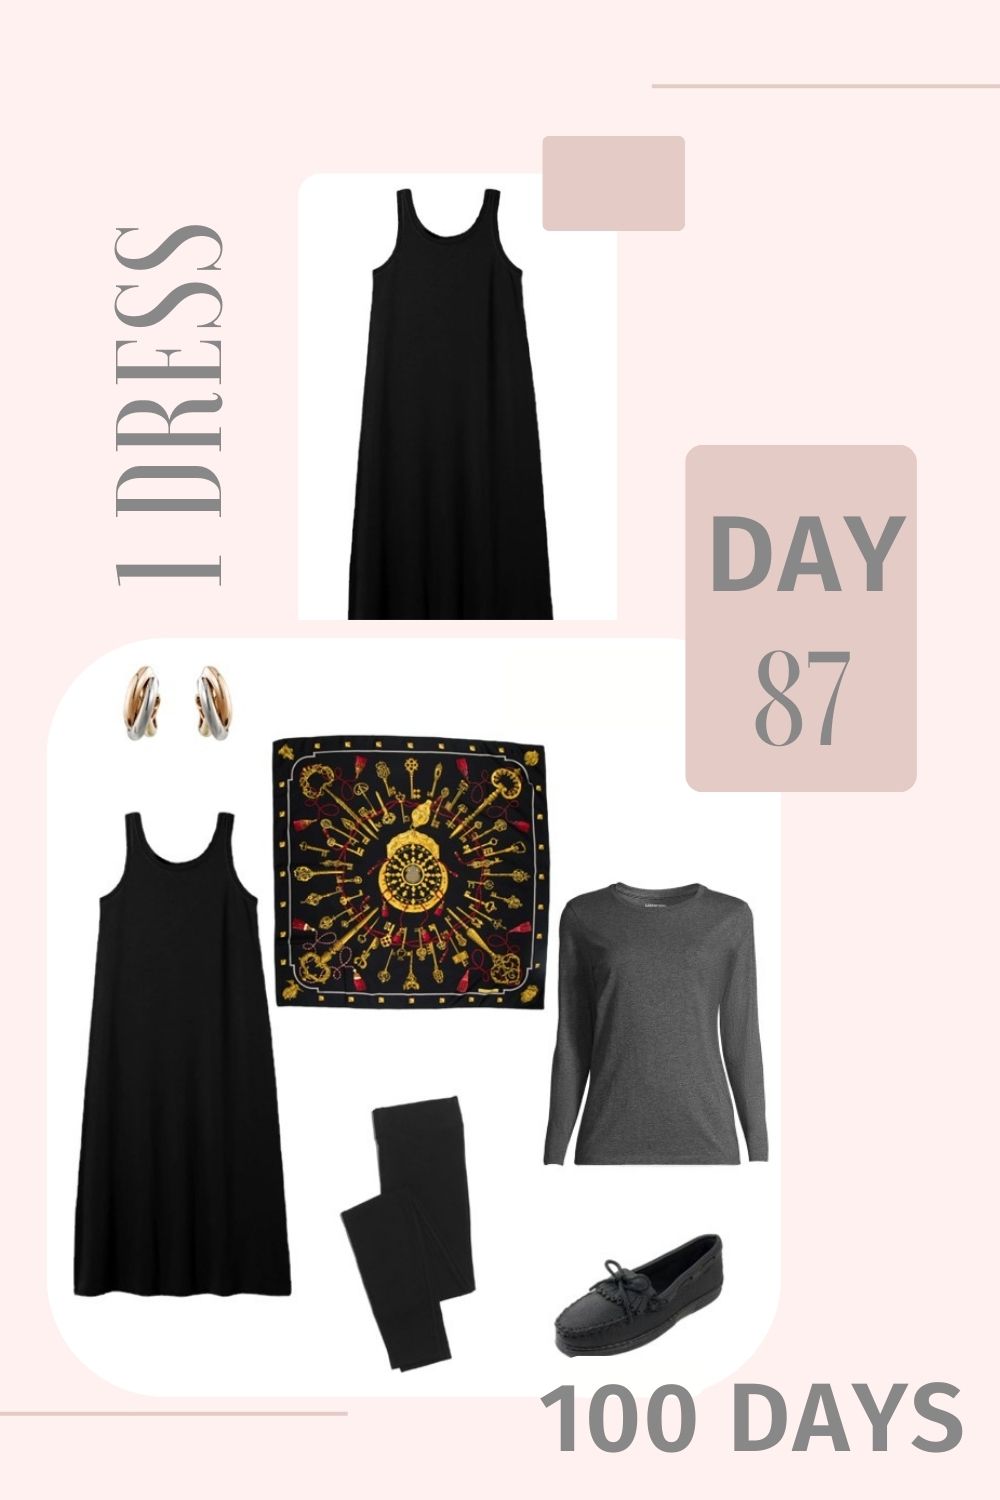 1 Dress 100 Days - Day 87